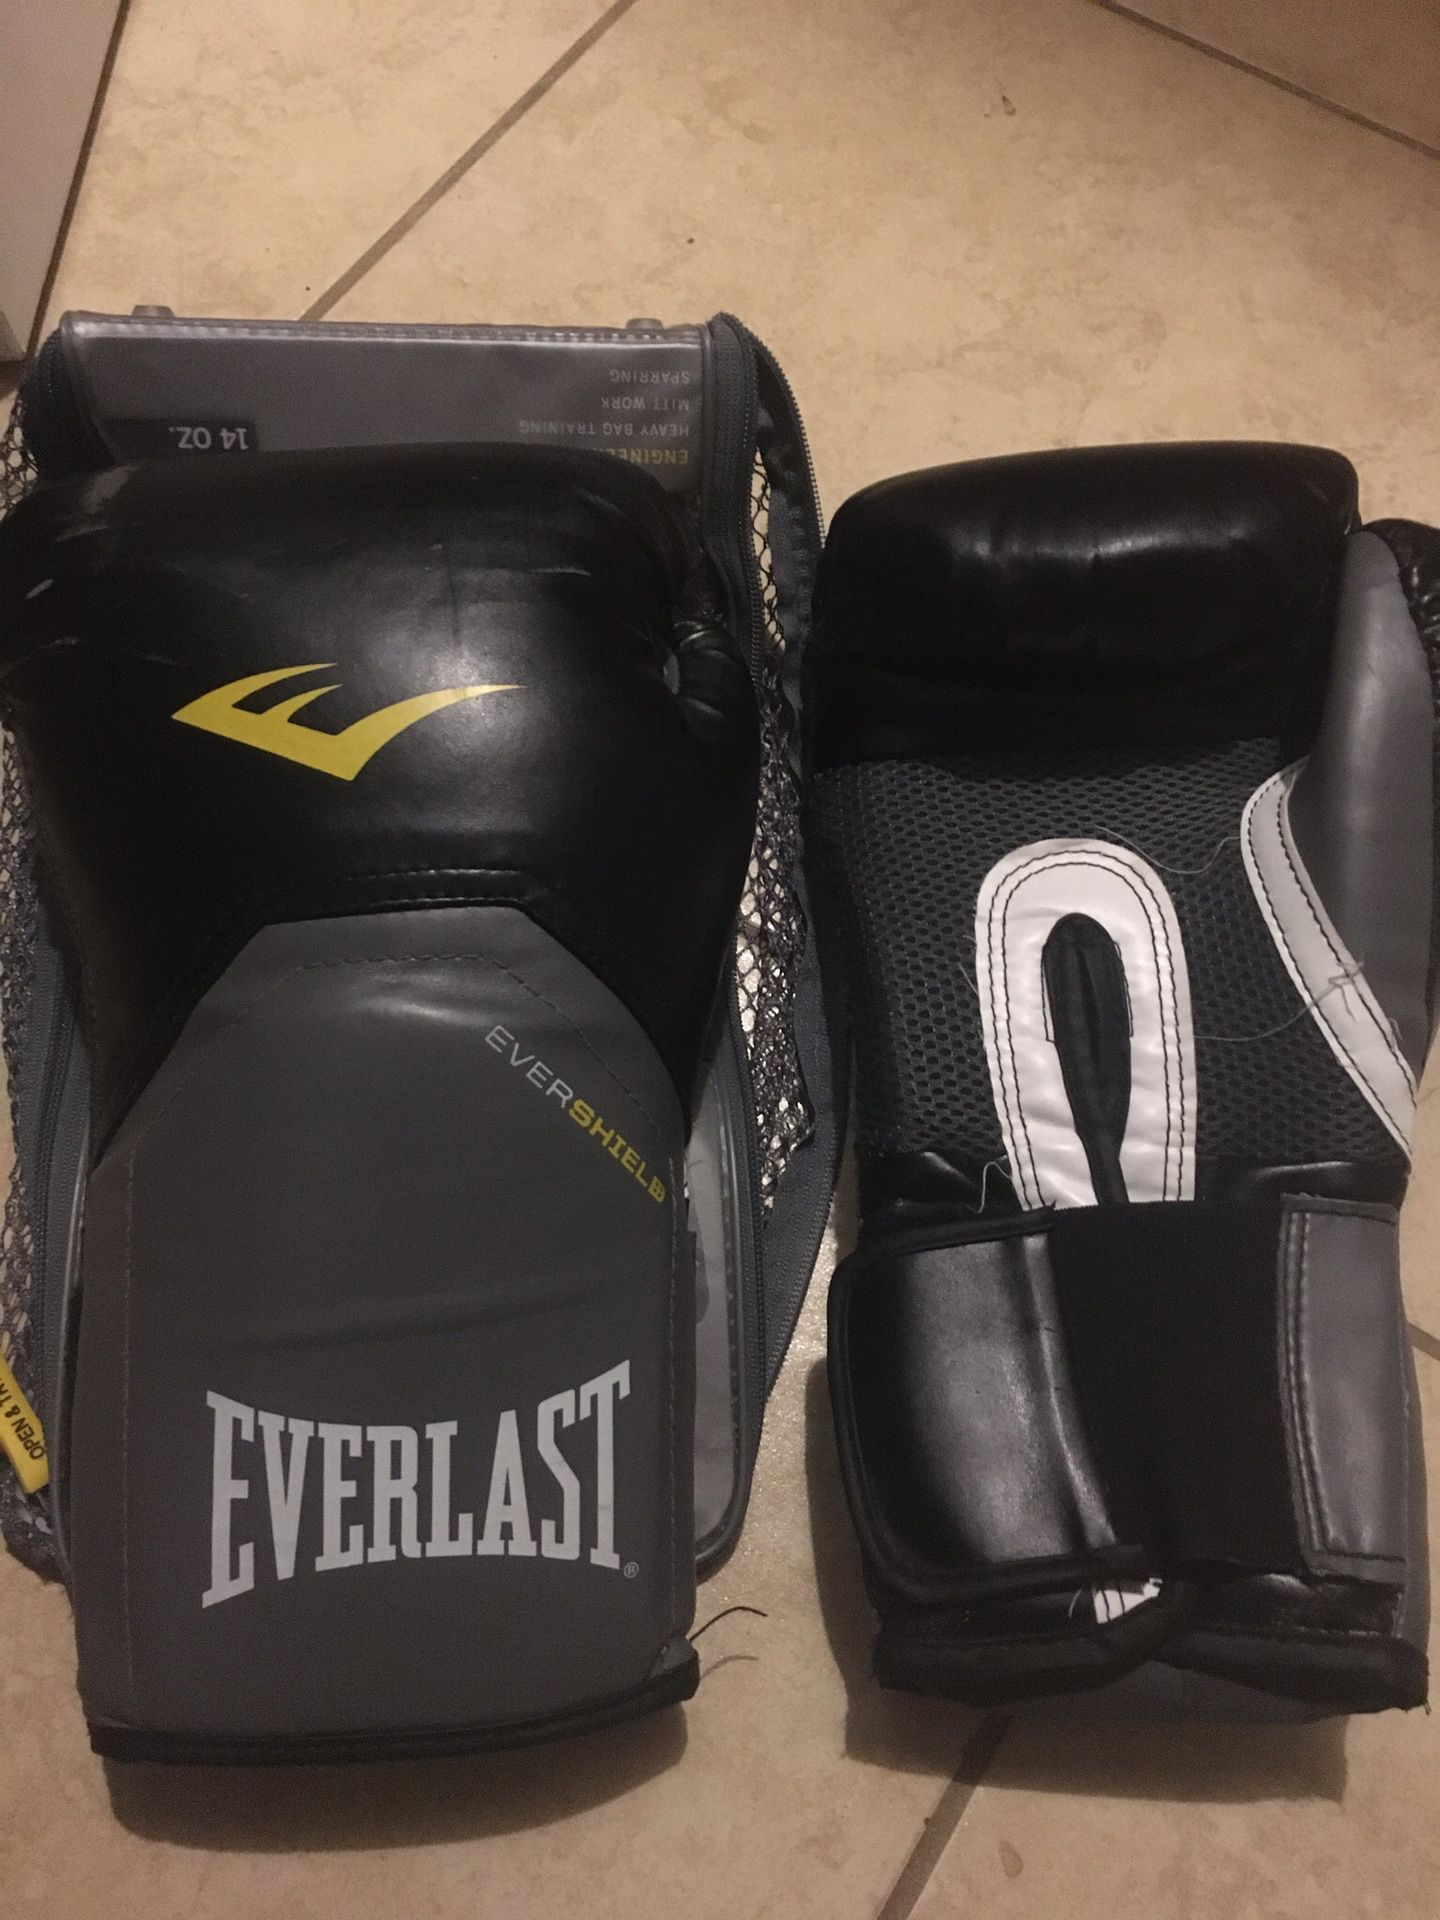 Everlast boxing gloves 14oz